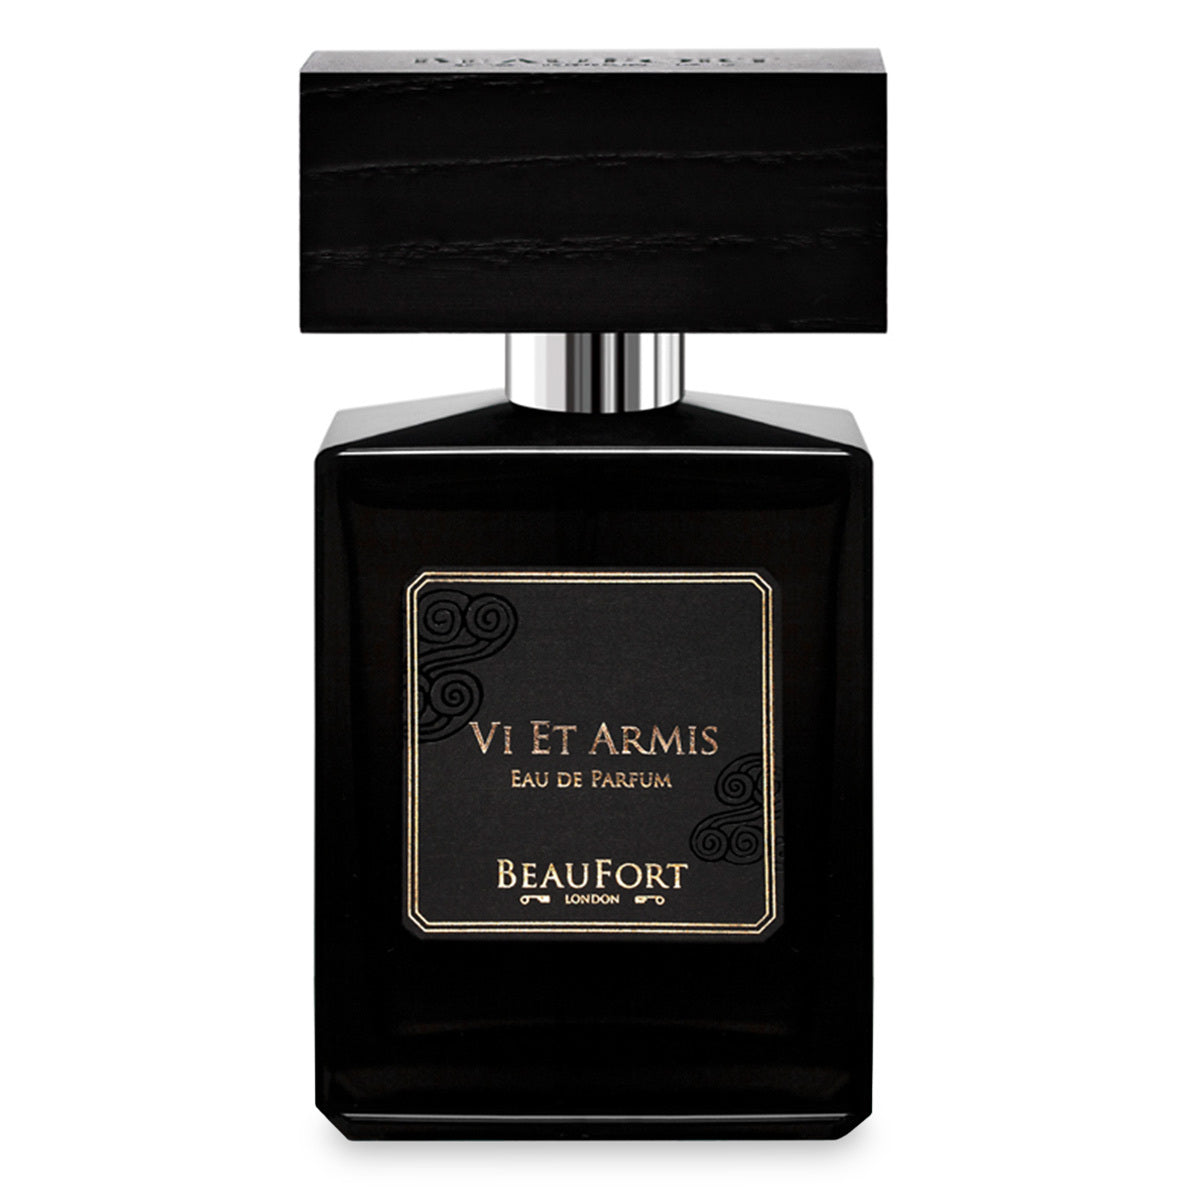 Primary image of Vi Et Armis Eau de Parfum